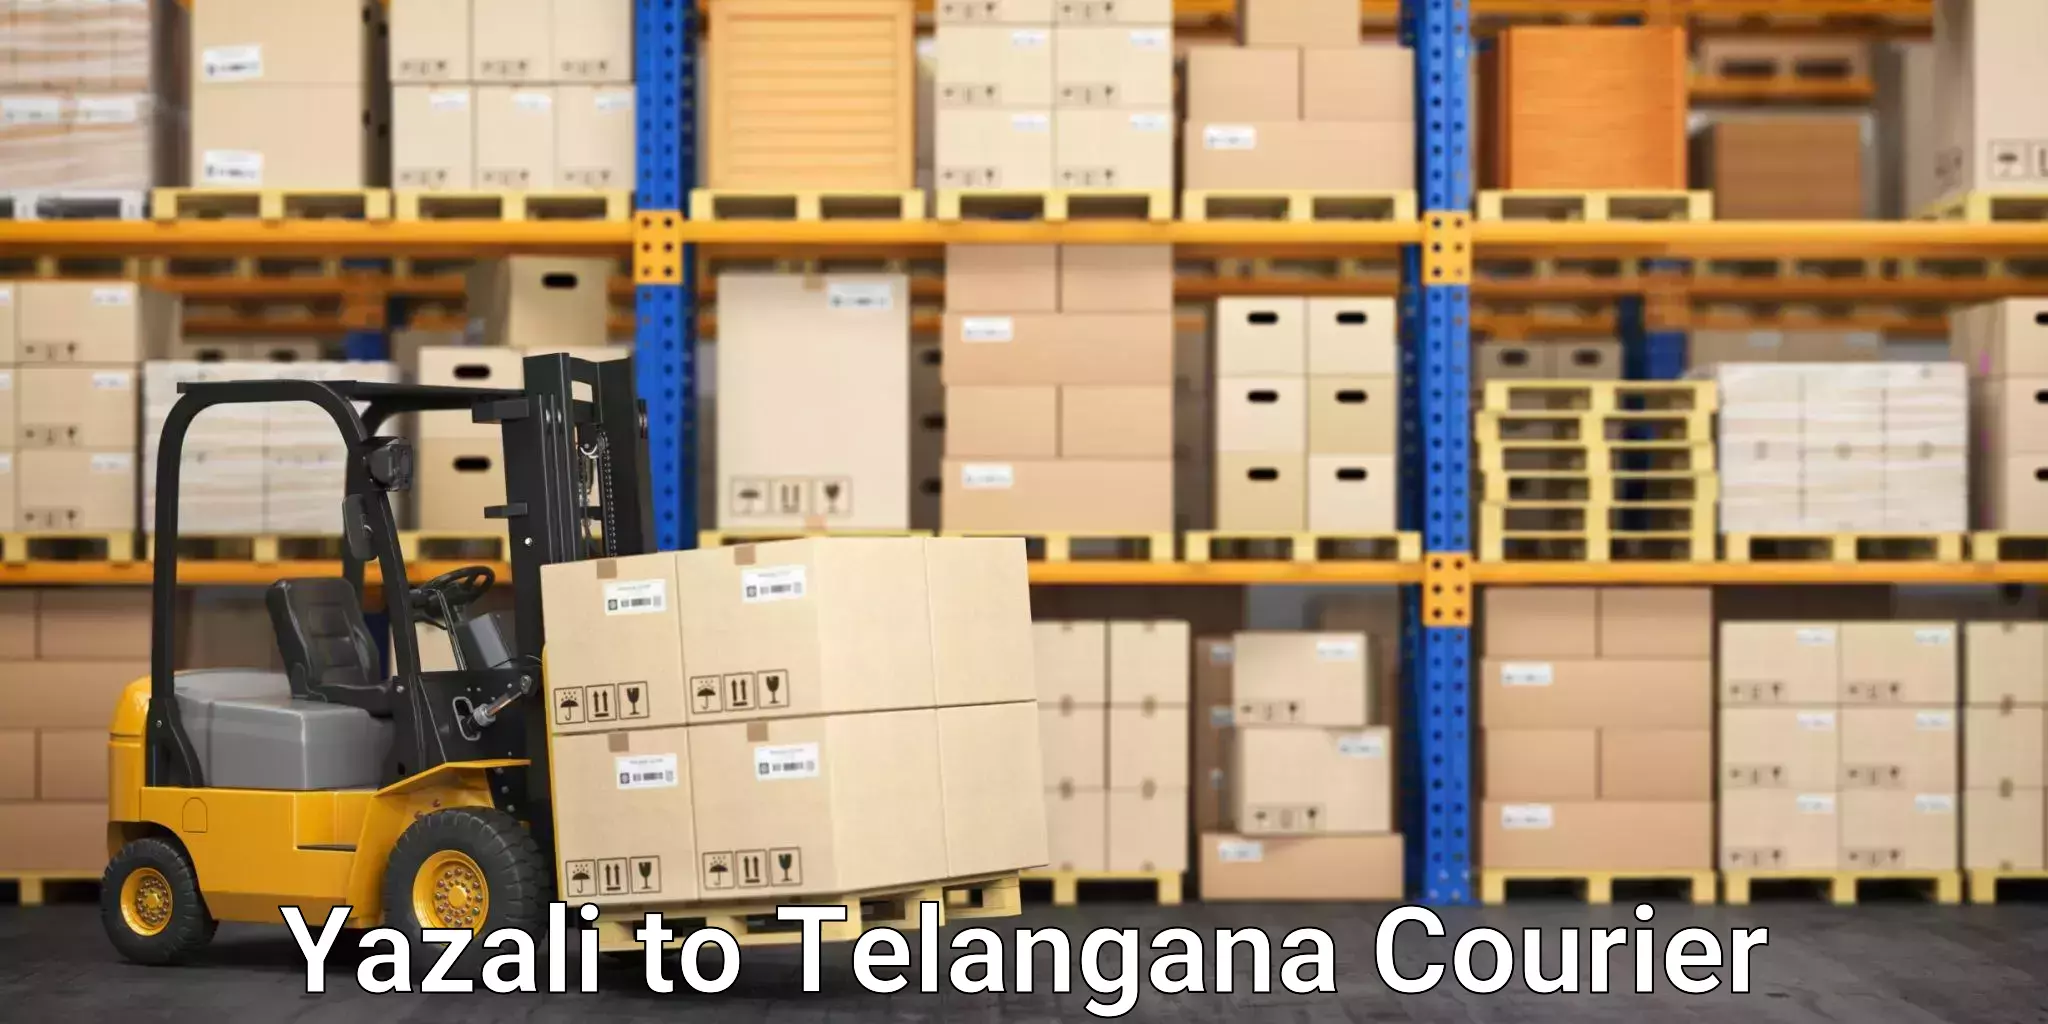 Smart courier technologies Yazali to Telangana